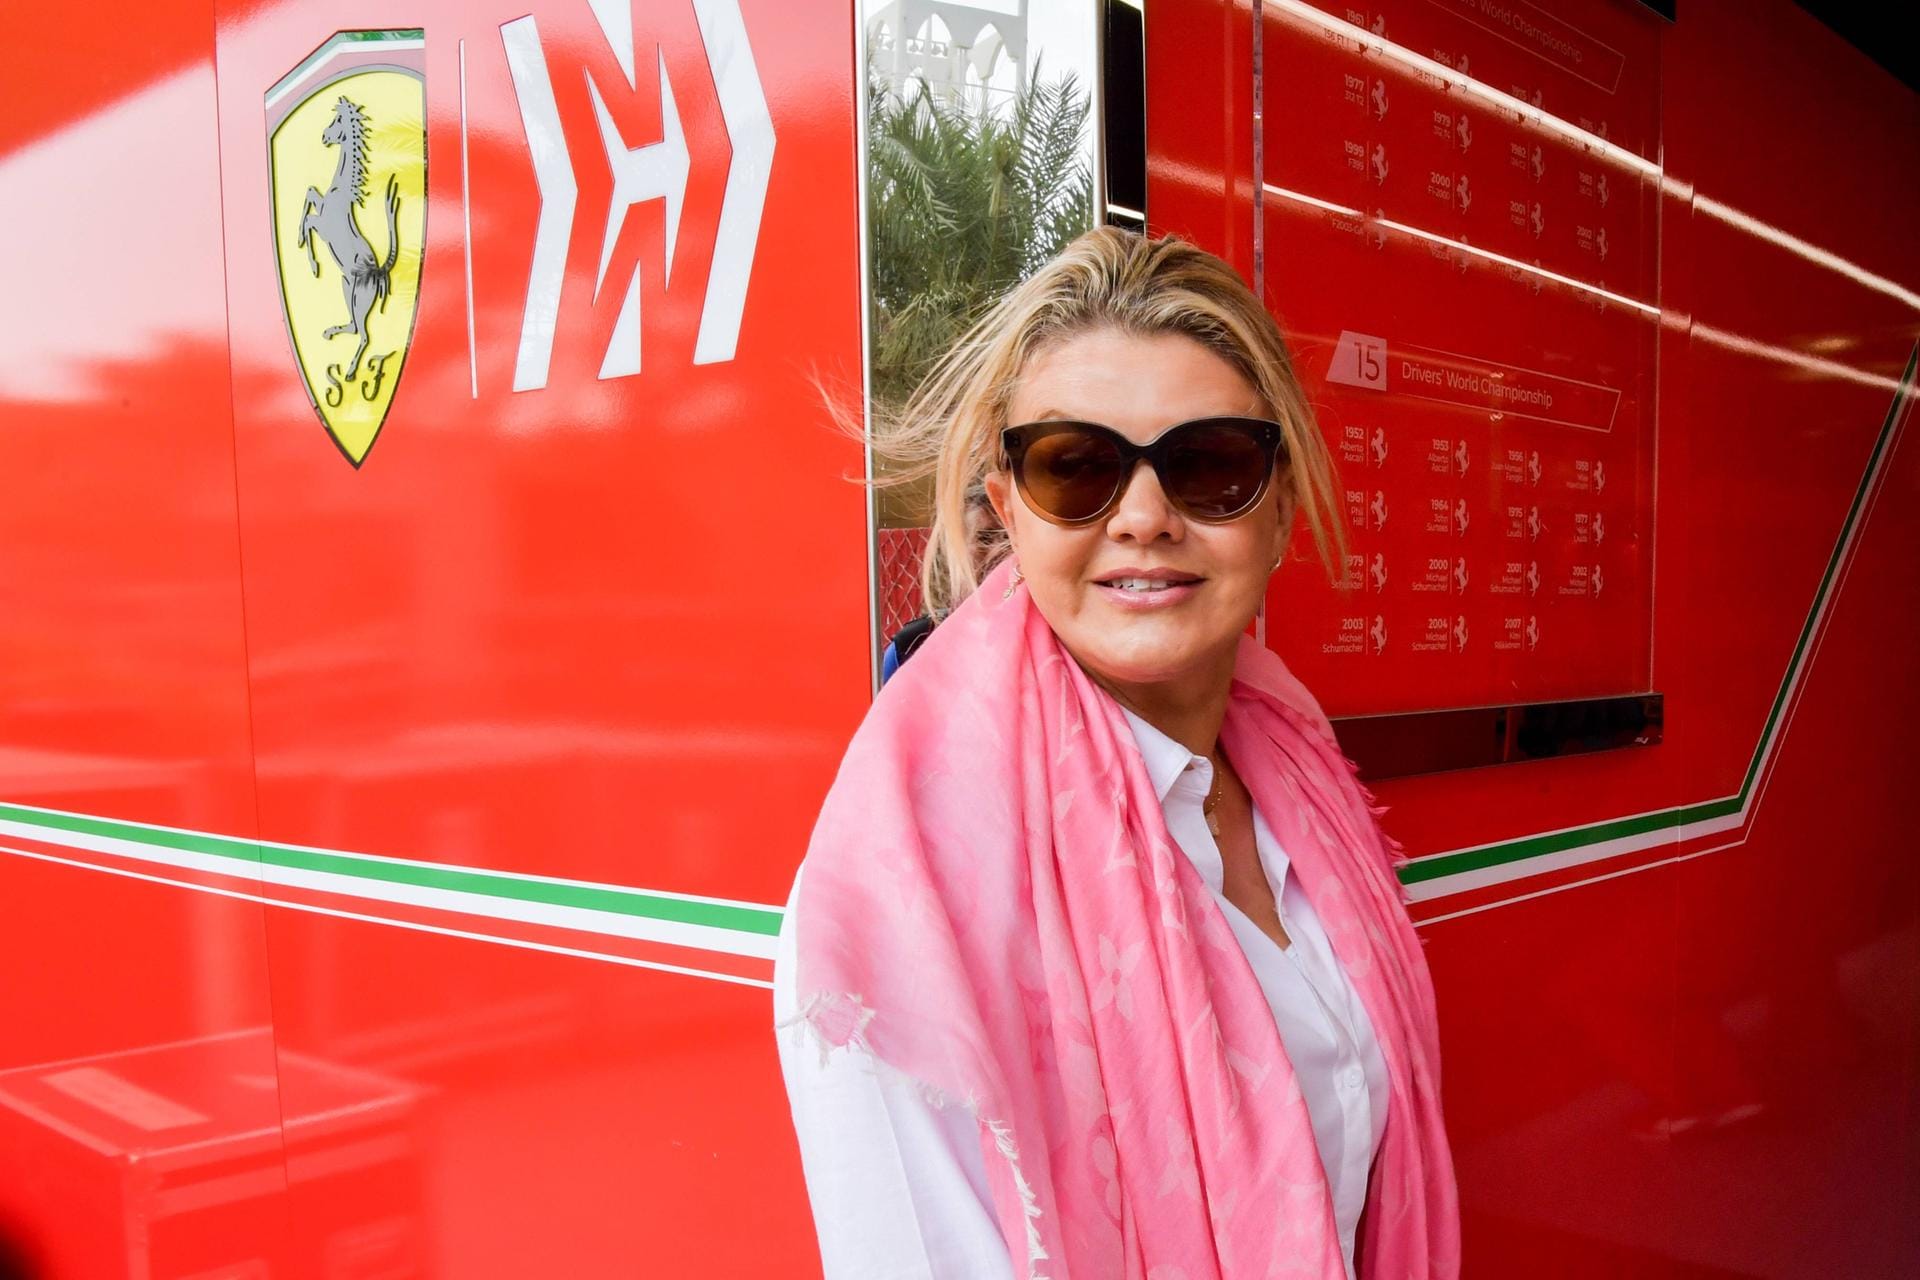 Mutter Corinna Schumacher begleitet ihren Sohn Mick bei den Tests in Bahrain.